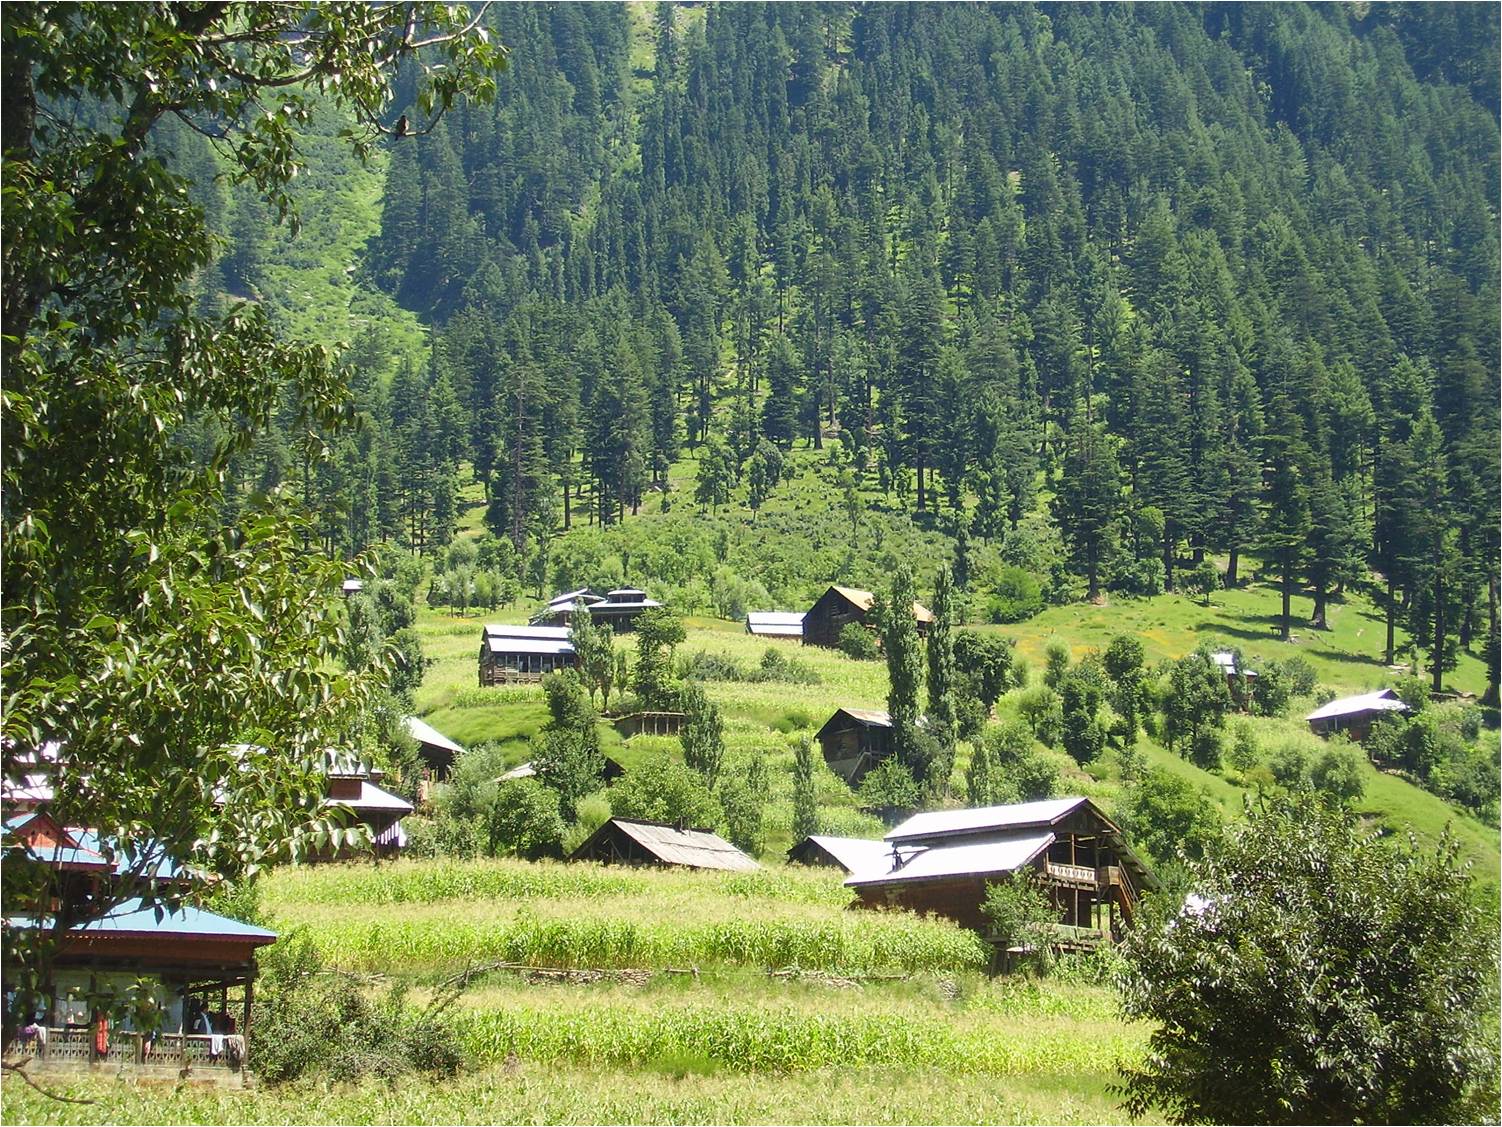 Xxx Rawlakot Ajk Full Video - Latest Pictures Of Sharda Village Neelum Valley Azad Kashmir - XXXPicss.com